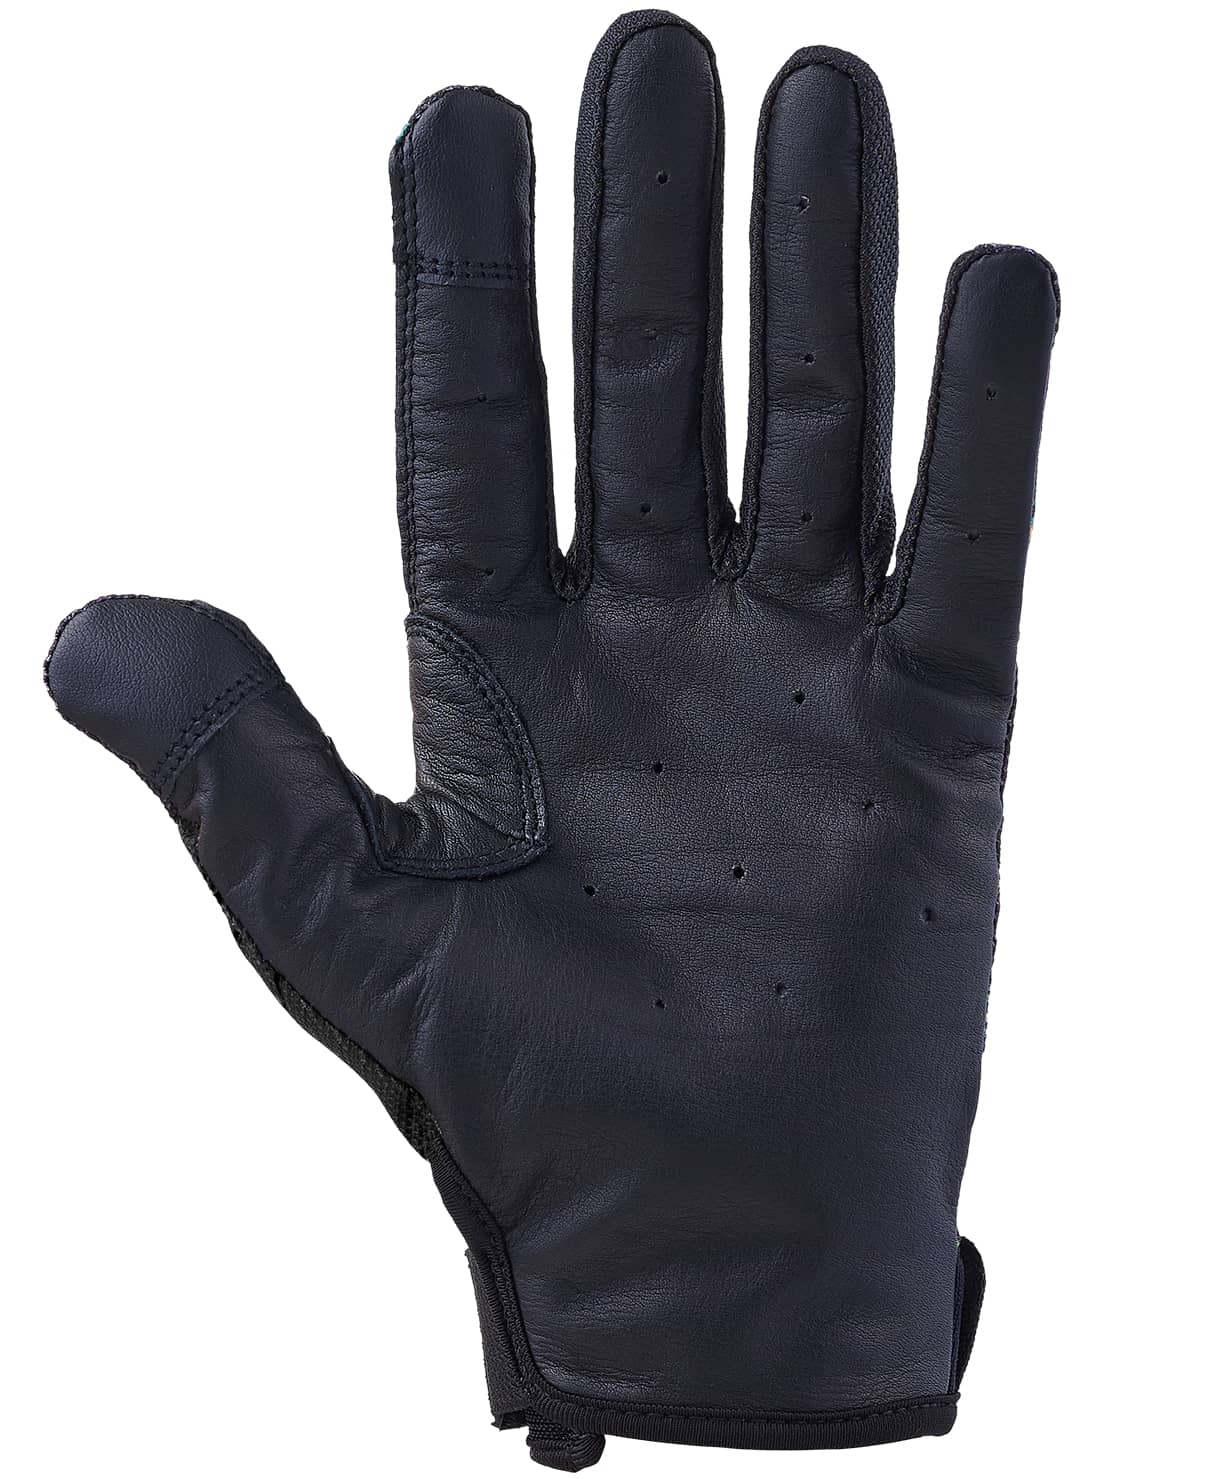 Перчатки для фитнеса Star Fit WG-104, с пальцами, черный/красный 1230_1479